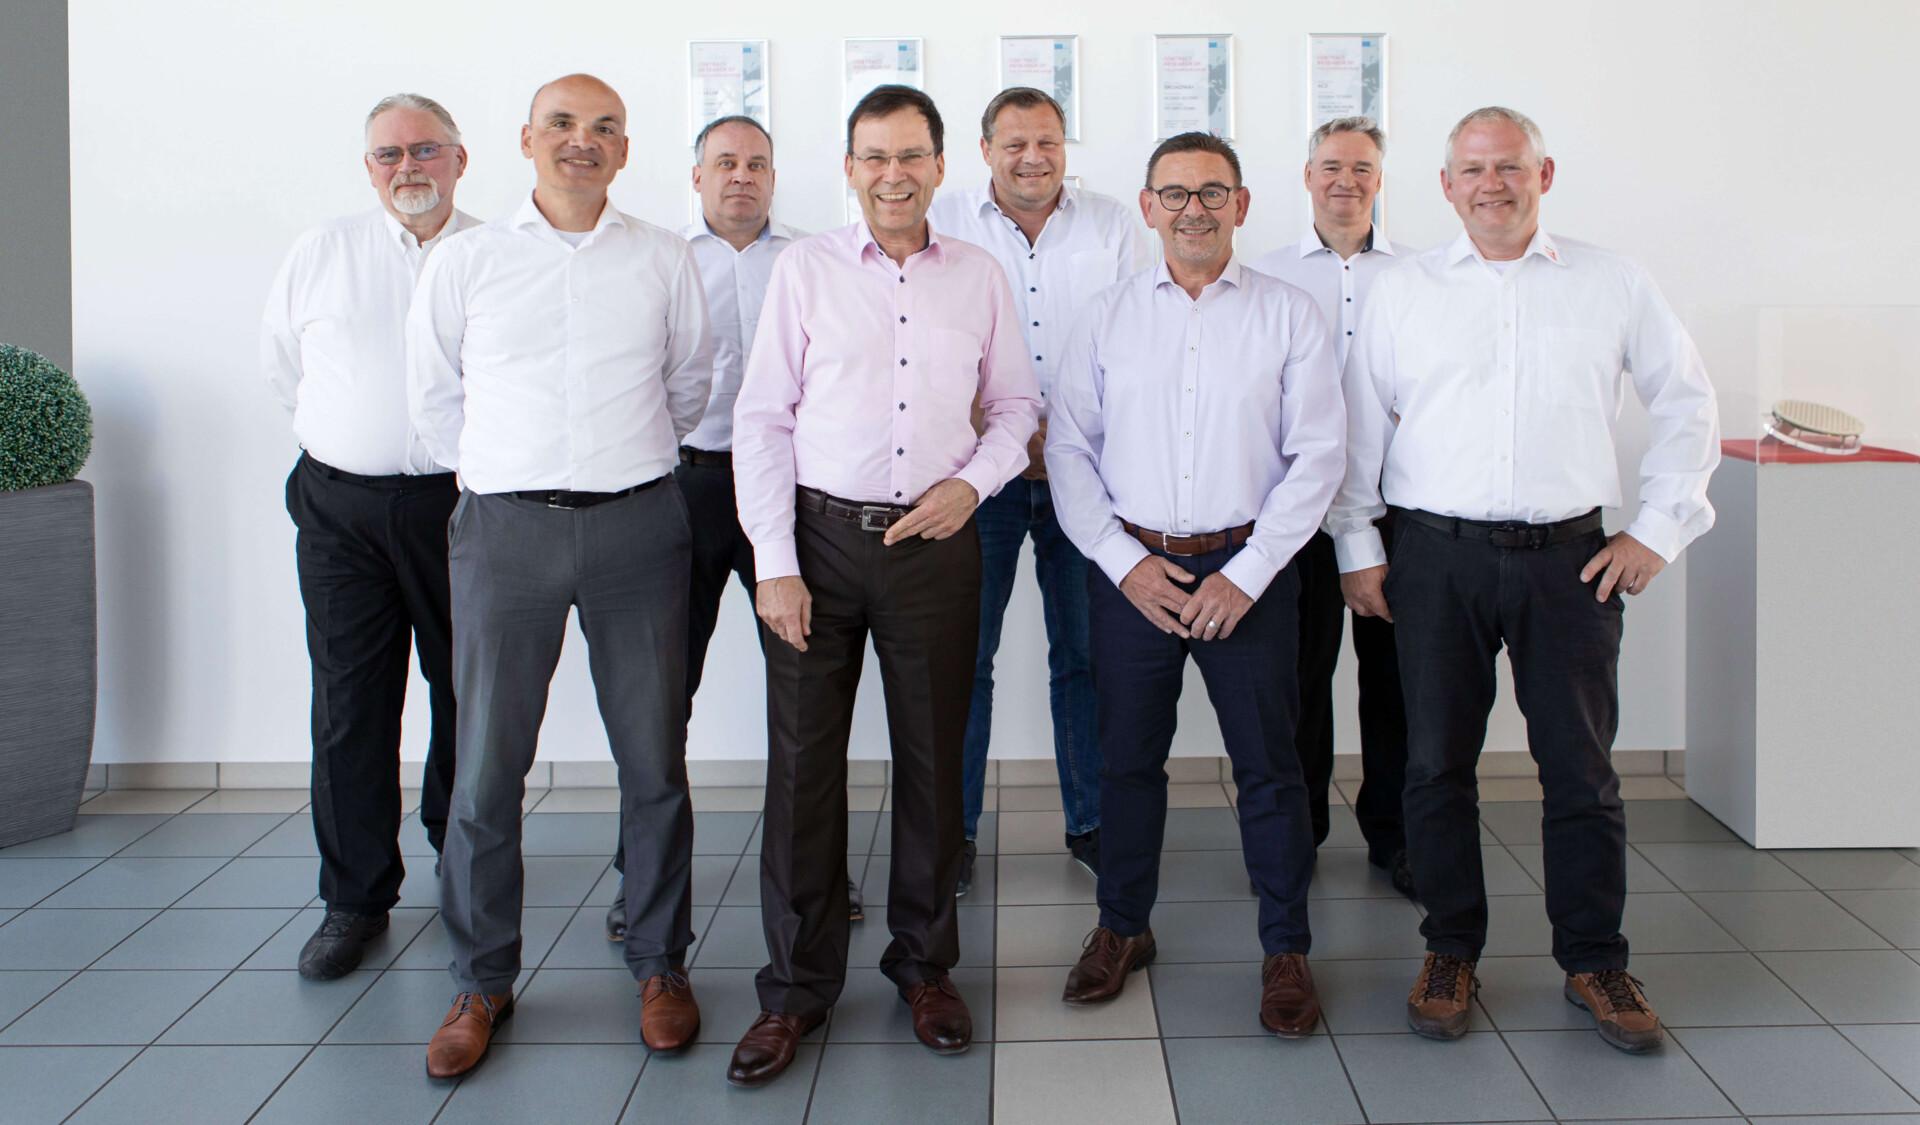 Von links nach rechts: Johannes Borkes, Rüdiger Follmann, Frank Henkel, Peter Waldow, Heinz Syrzisko, Arnd Neborg, Matthias Geissler, Jens Lerner.